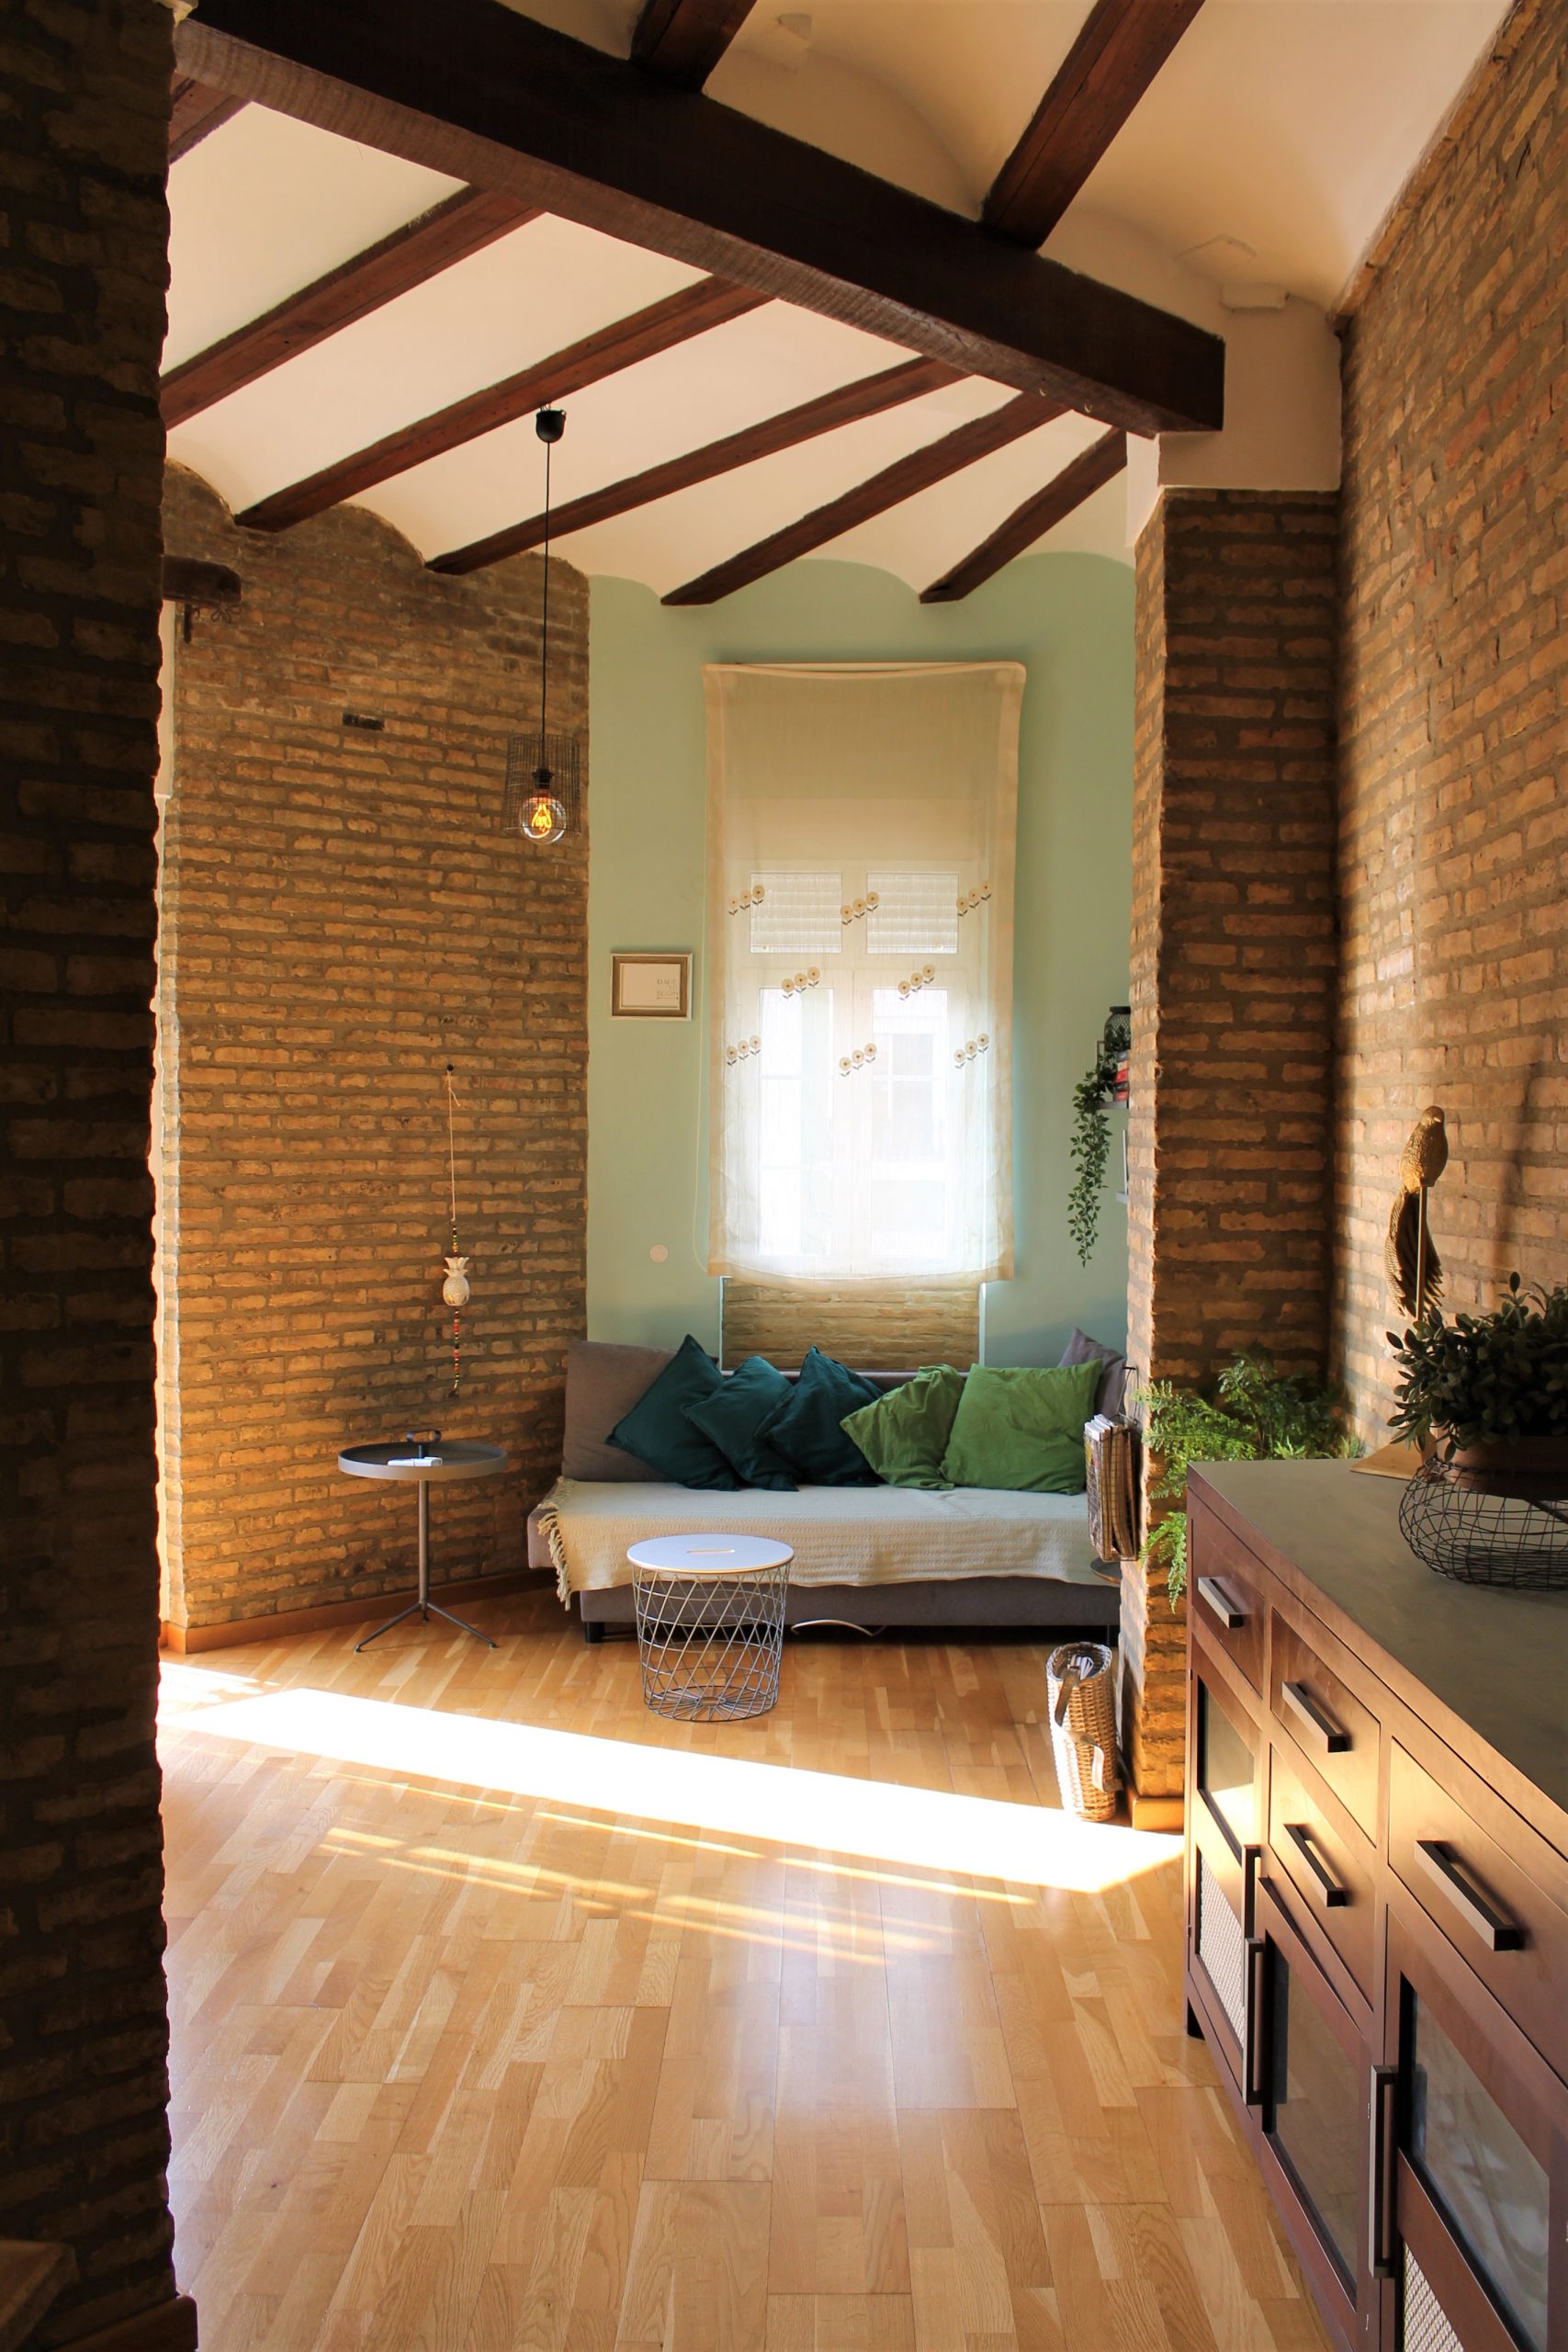 Sueca 30 - Lovely expat flat in Ruzafa, Valencia